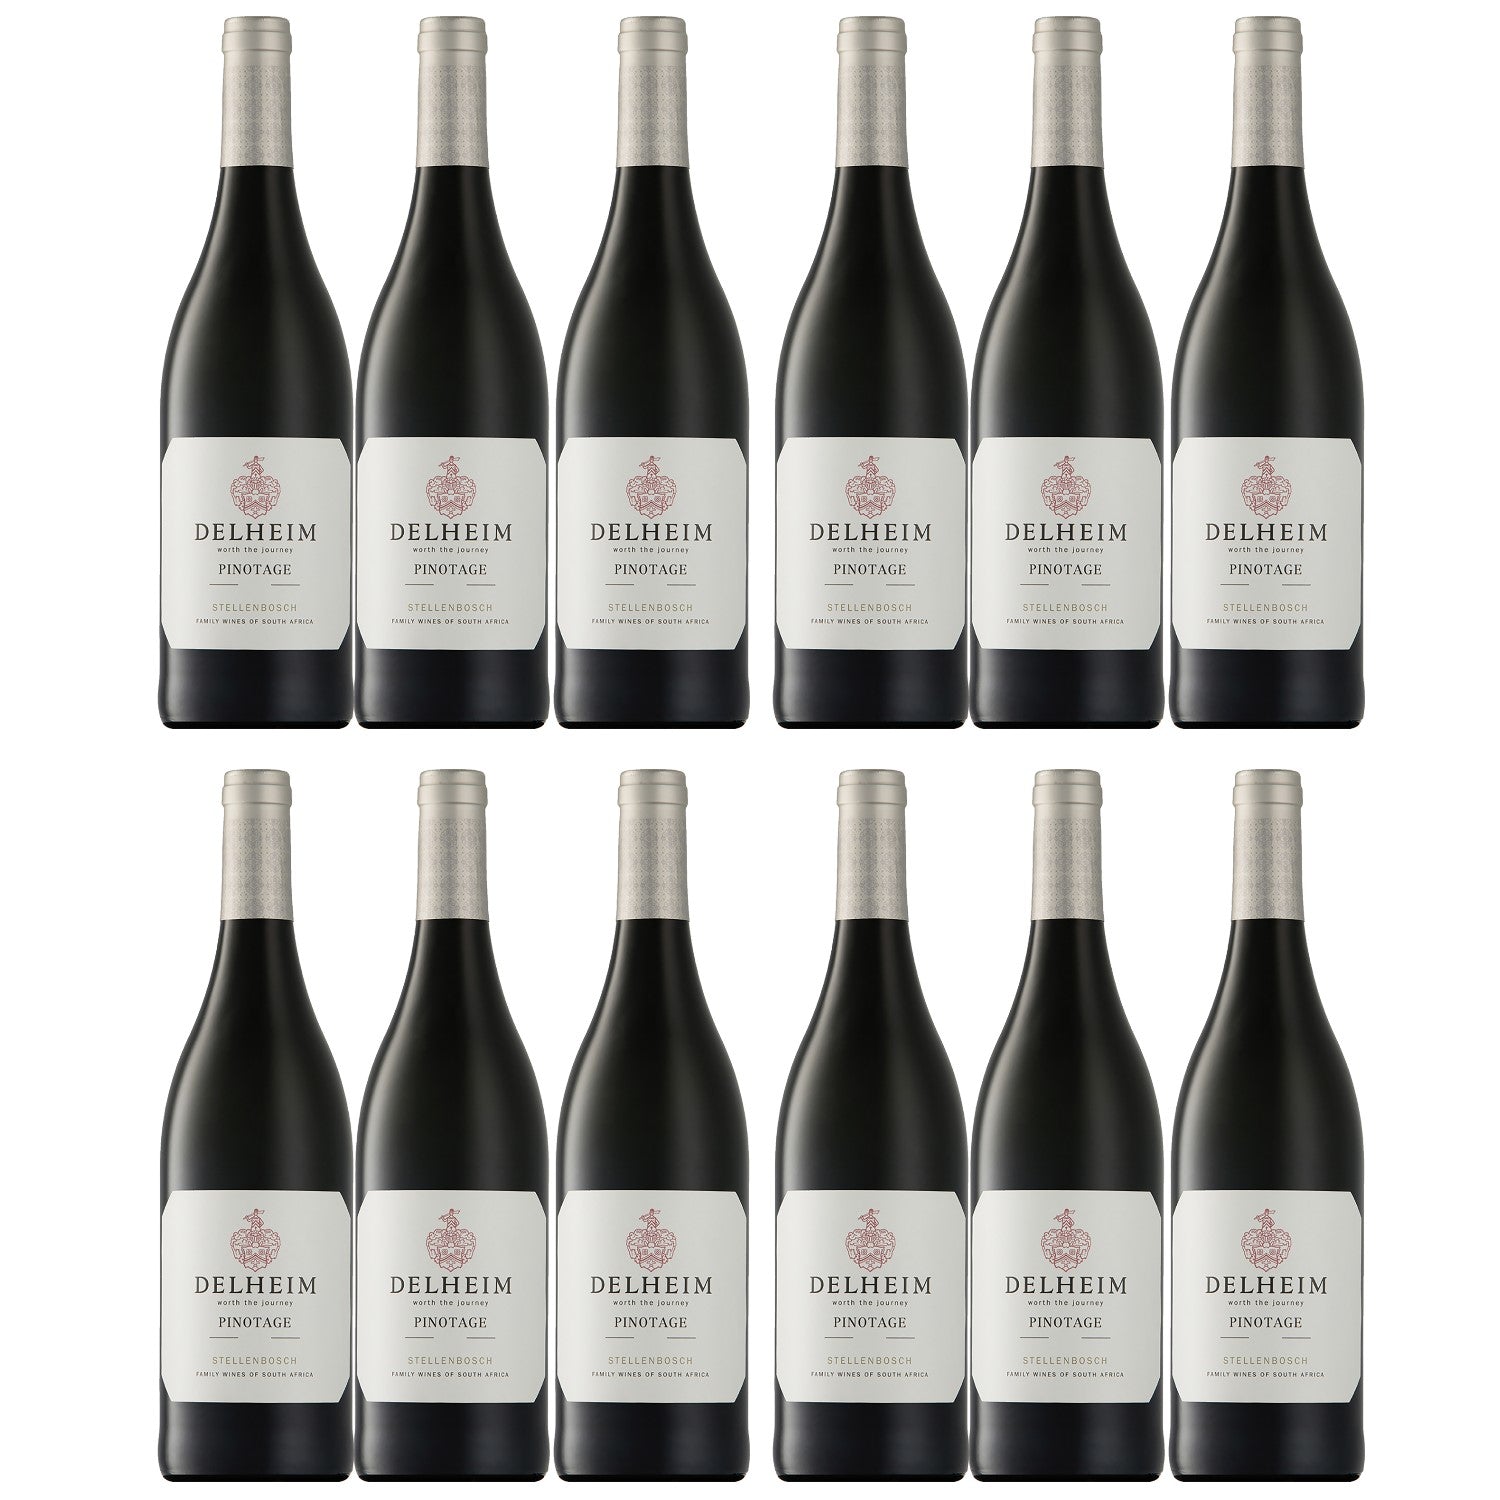 Delheim Pinotage Stellenbosch Rotwein südafrikanischer Wein trocken Südafrika (12 x 0.75l) - Versanel -